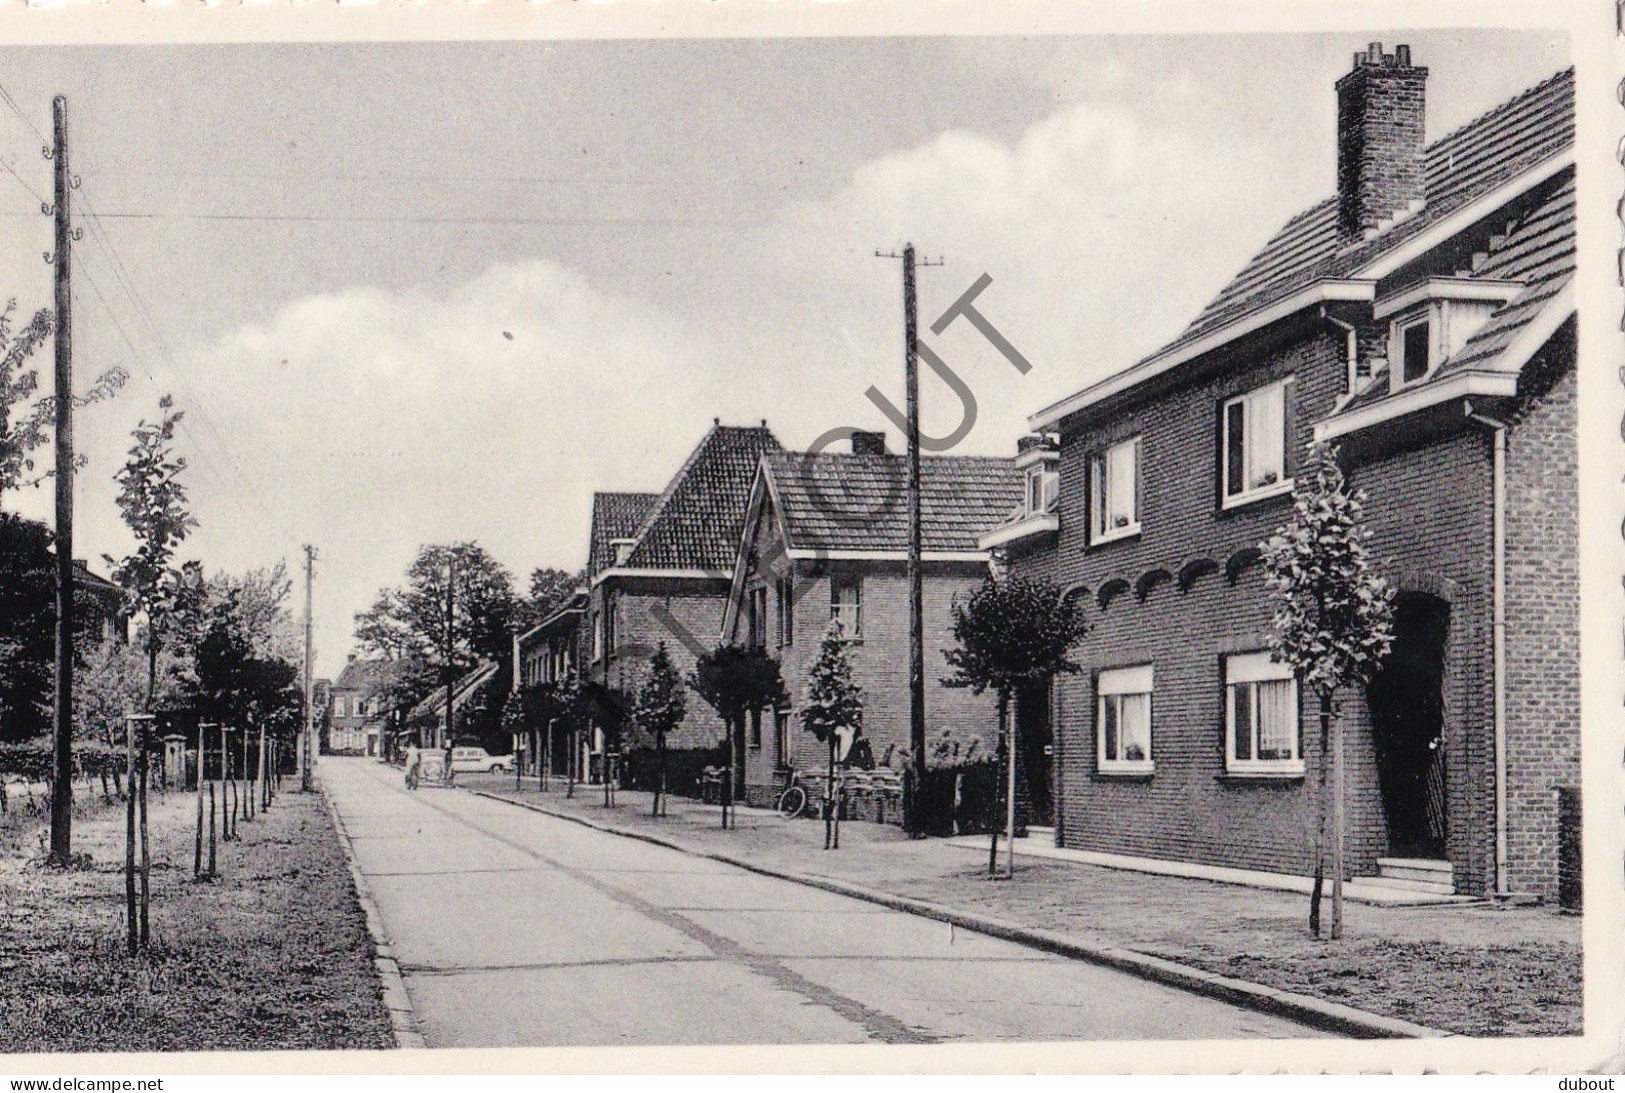 Postkaart/Carte Postale - Beverlo - Gaston Oomslaan (C3973) - Beringen